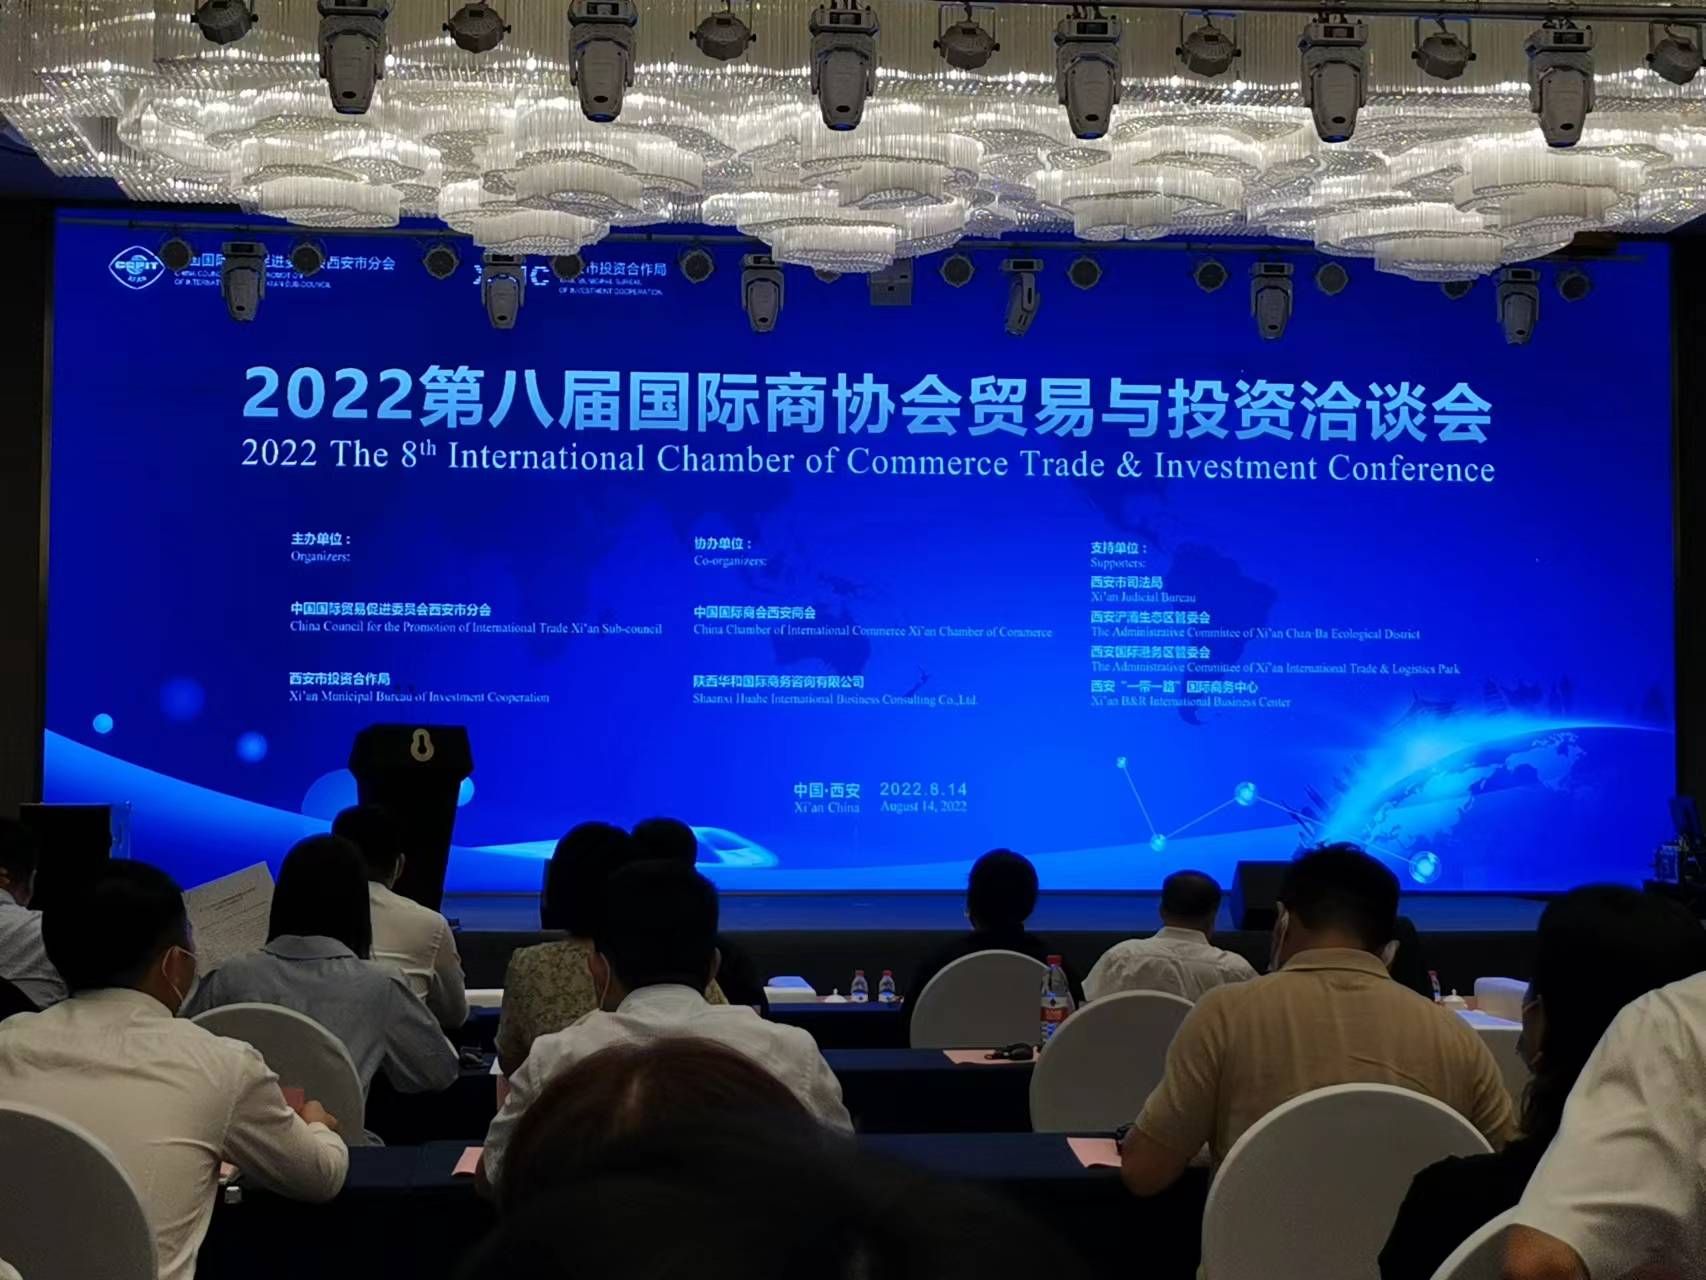 2022 Persidangan Dewan perdagangan & pelaburan antarabangsa ke-8